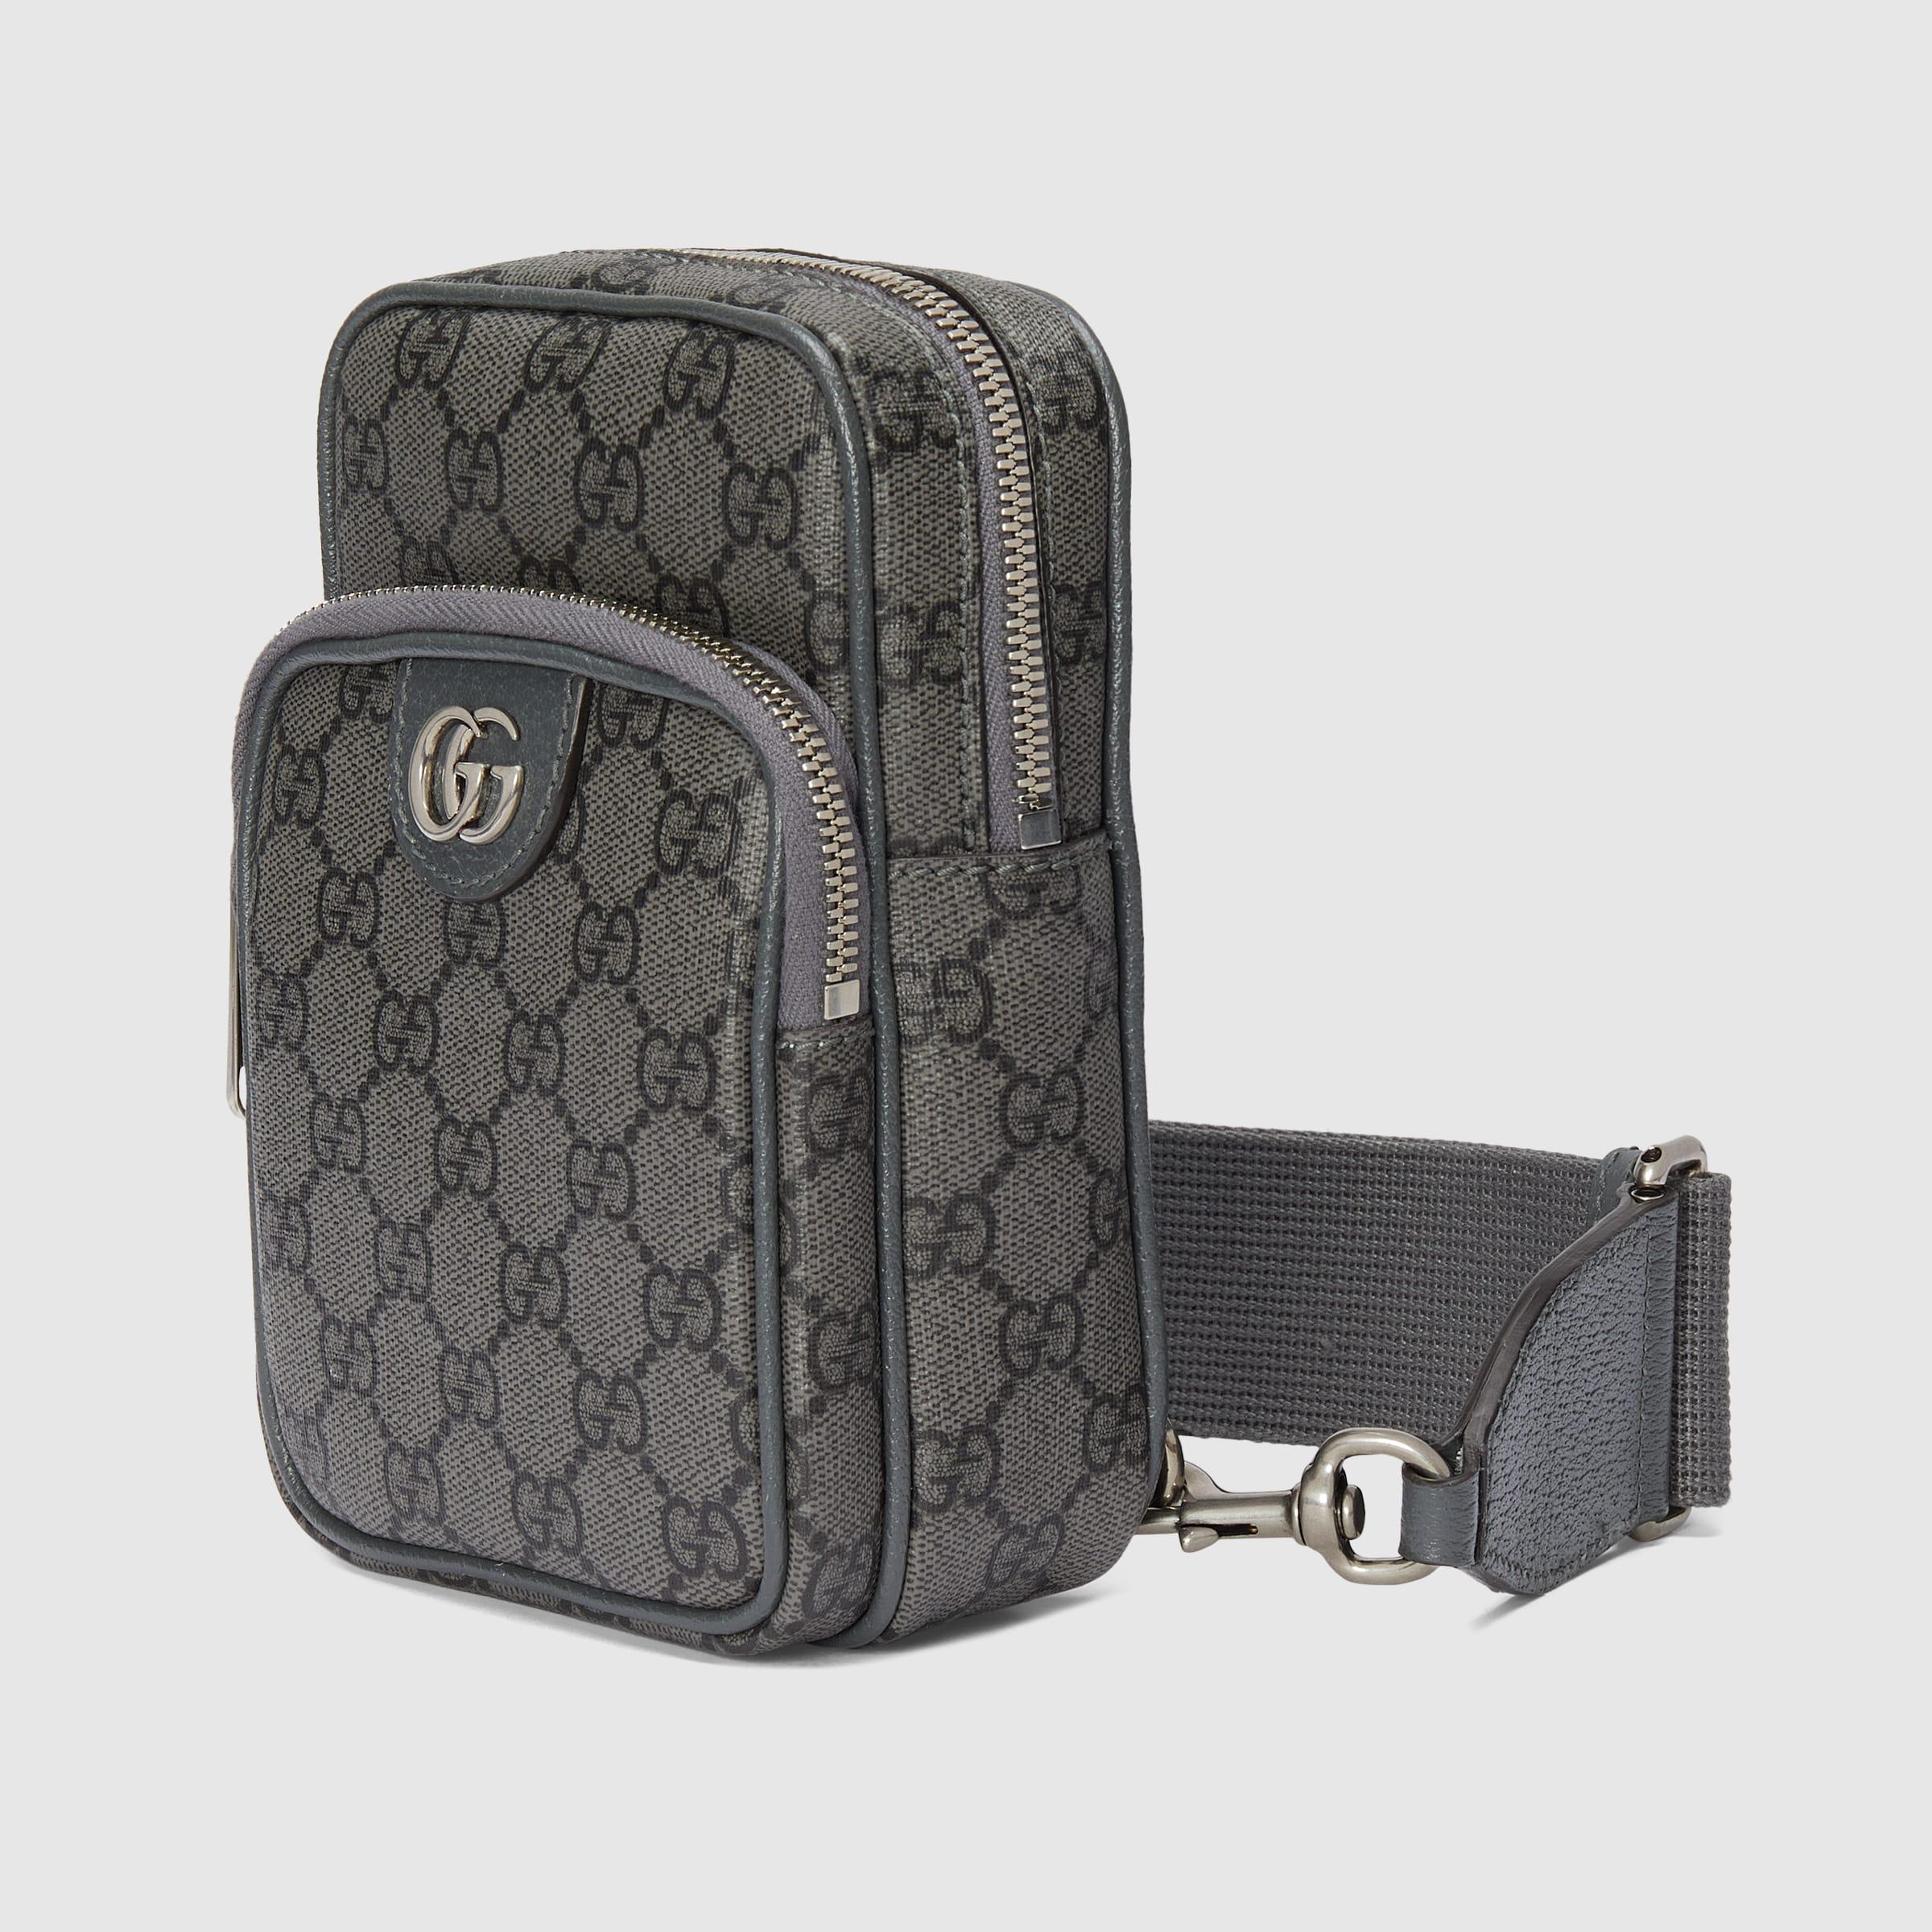 Gucci Men's Ophidia GG Mini Bag (Beige)